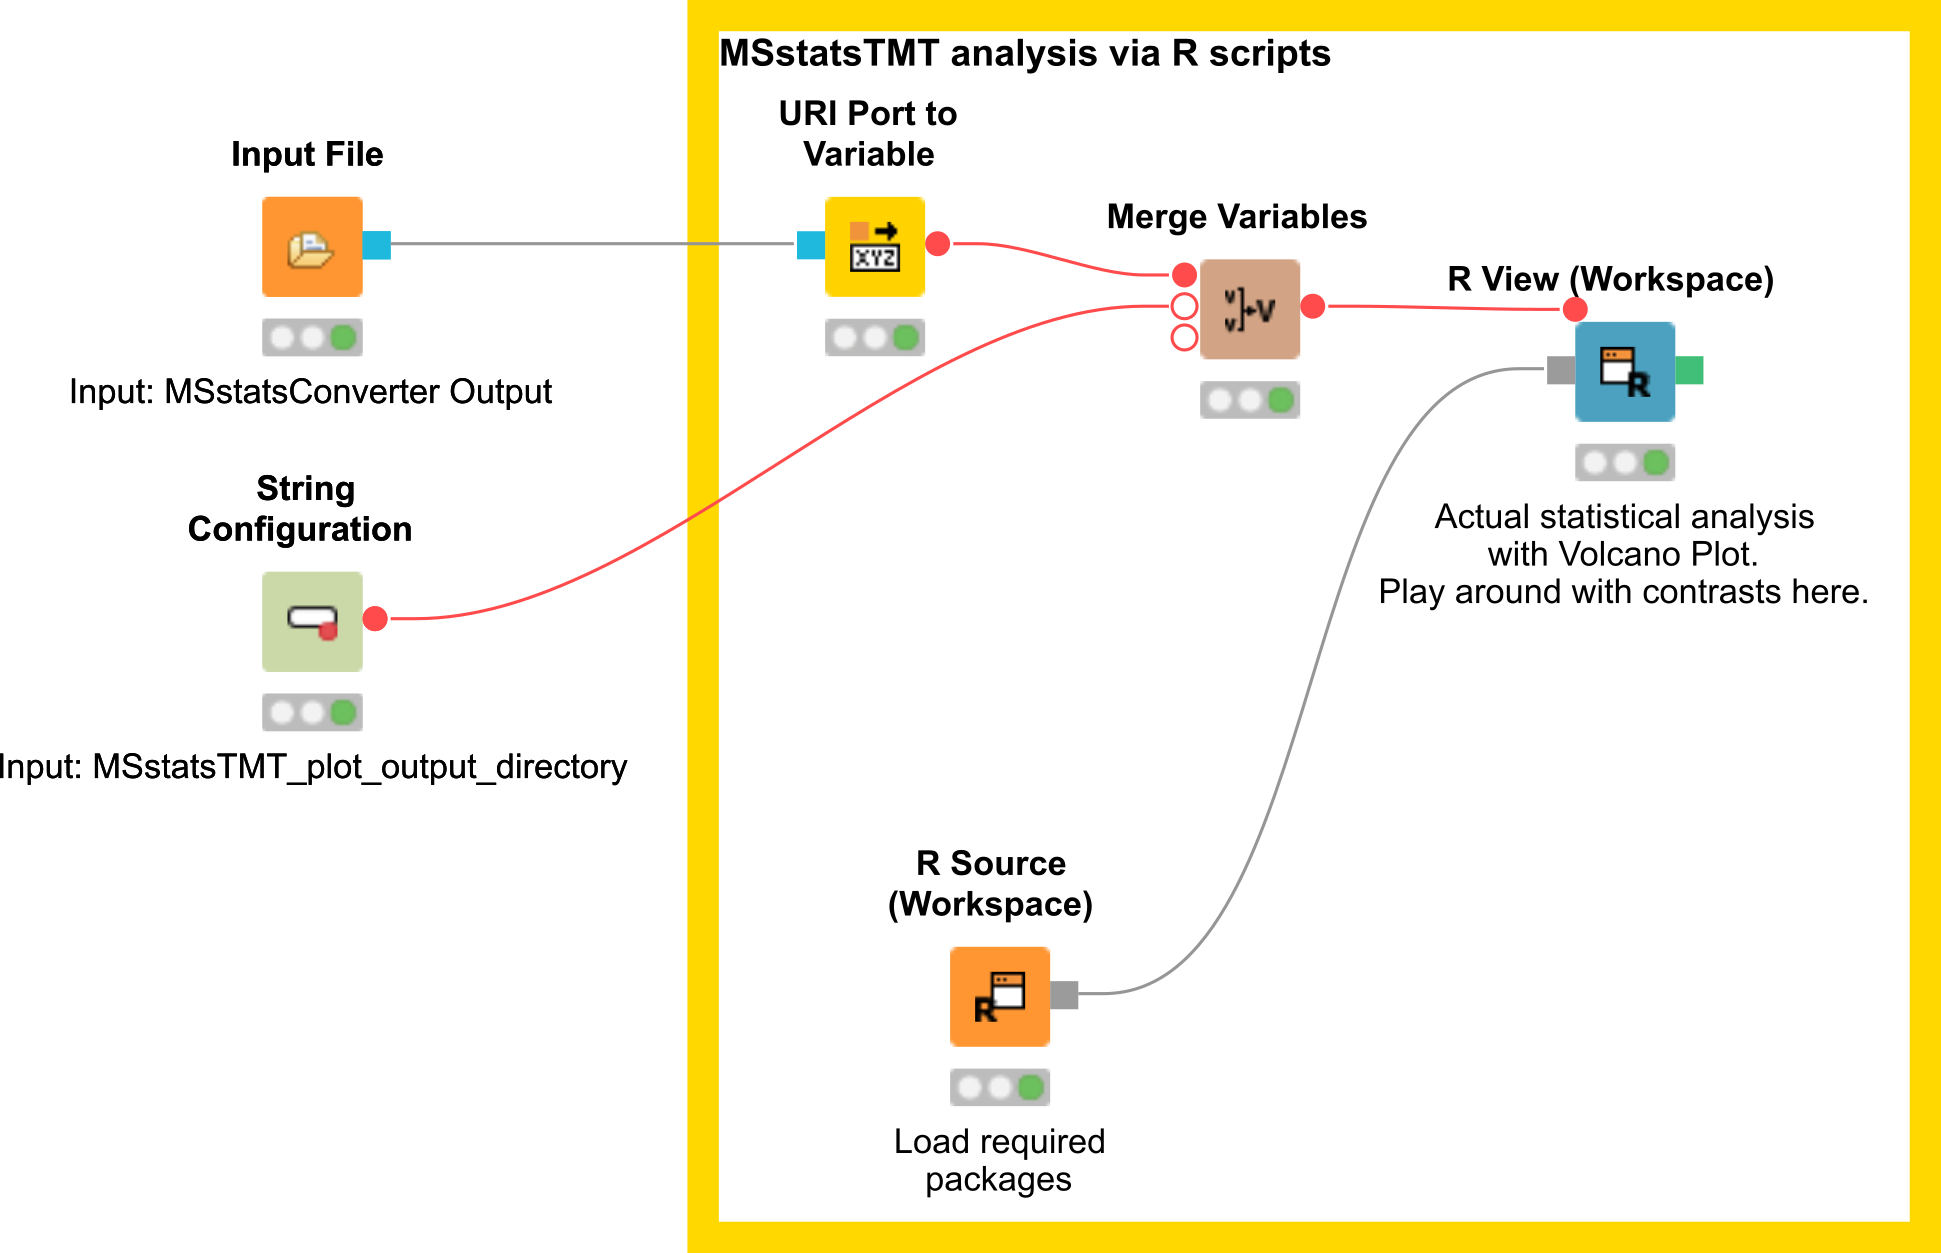 MSstatsTMT workflow segment